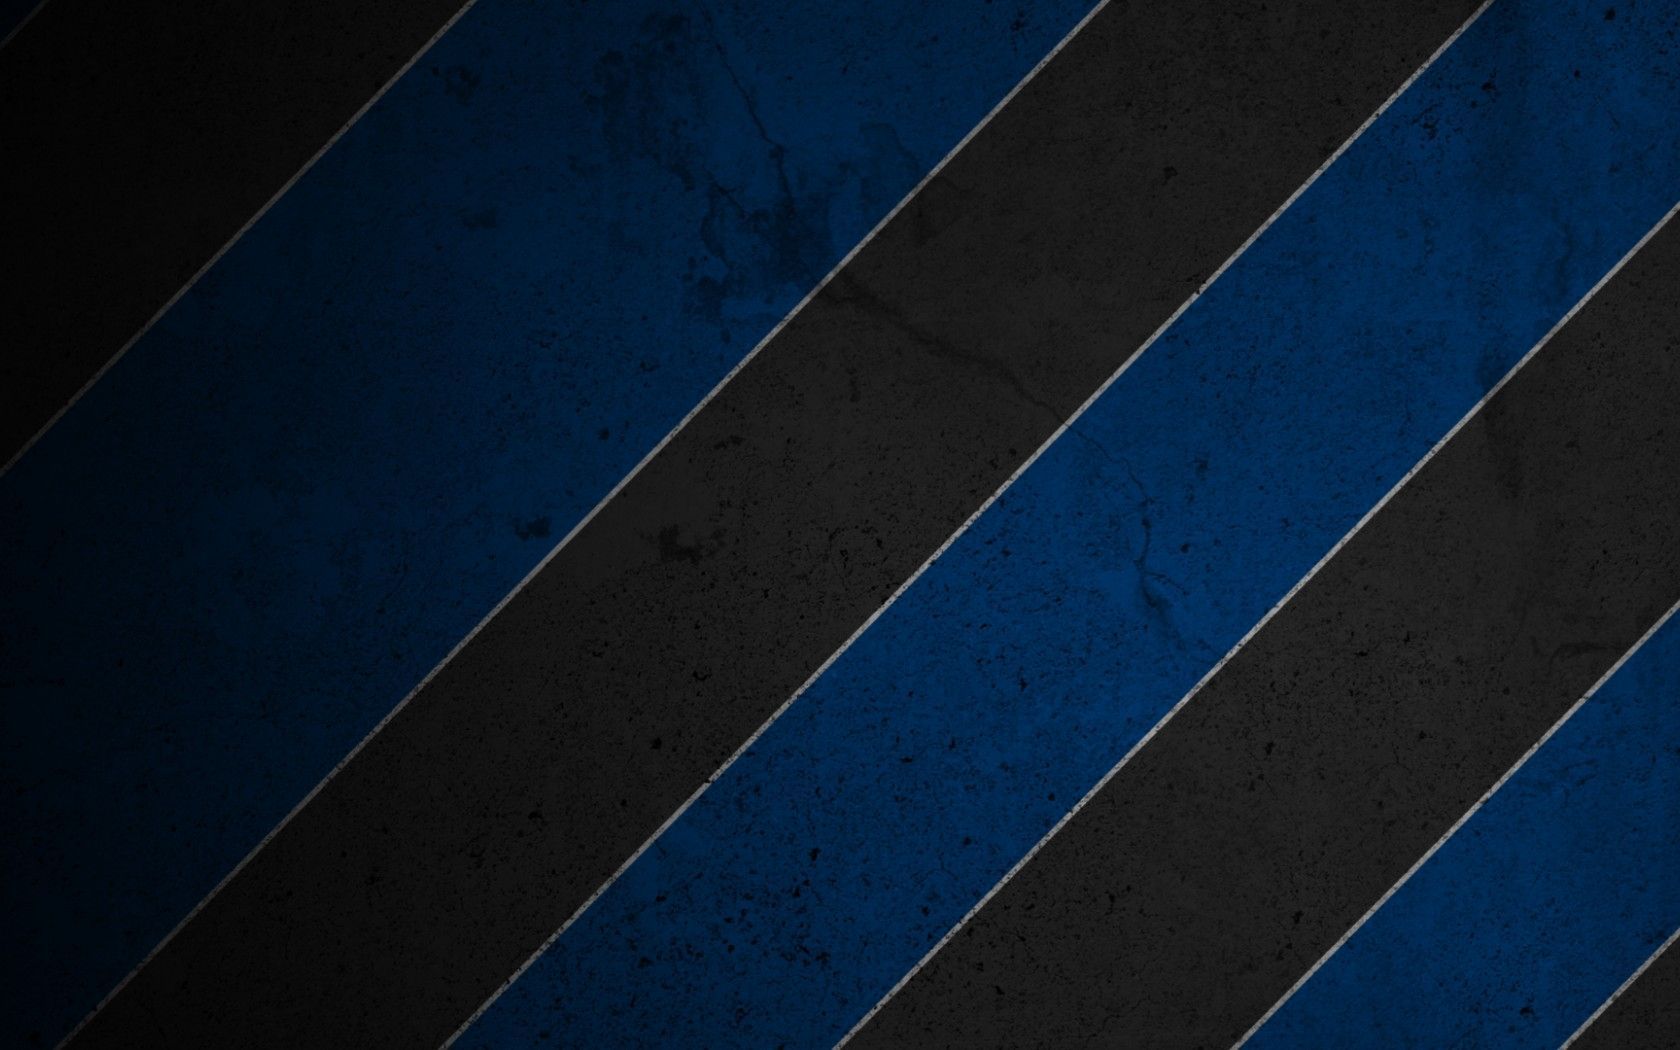 Download Wallpaper 1680x1050 Stripes, Blue, Black, White 1680x1050 ...